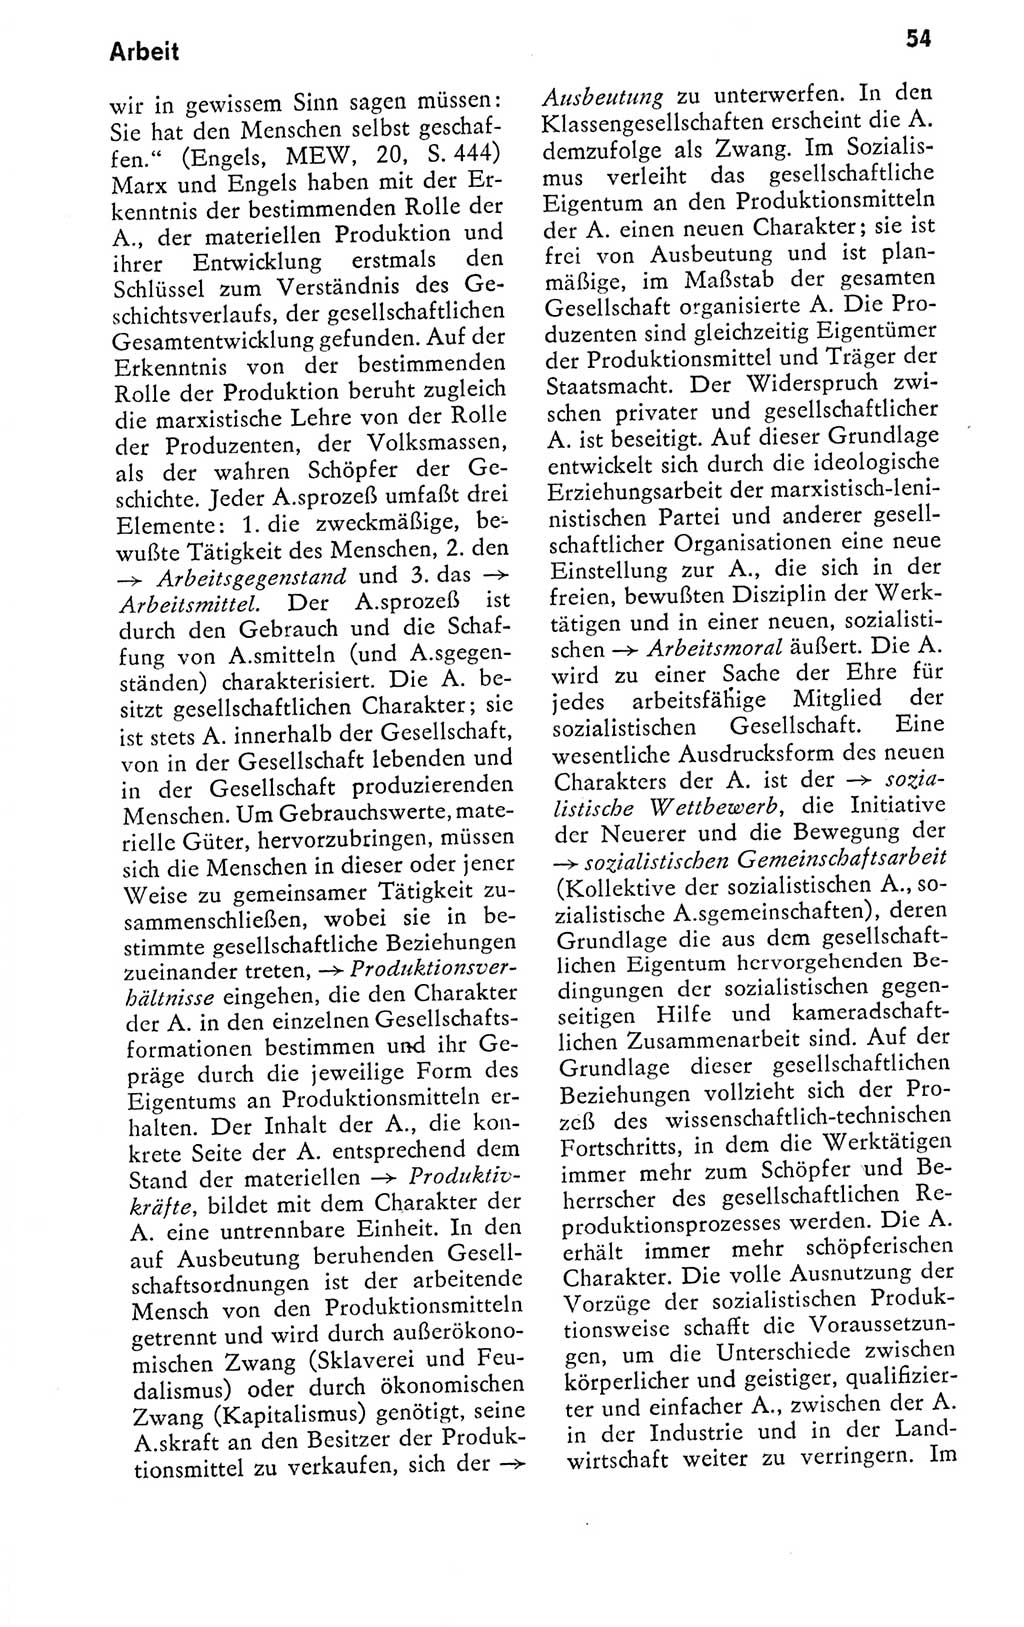 Kleines politisches Wörterbuch [Deutsche Demokratische Republik (DDR)] 1978, Seite 54 (Kl. pol. Wb. DDR 1978, S. 54)